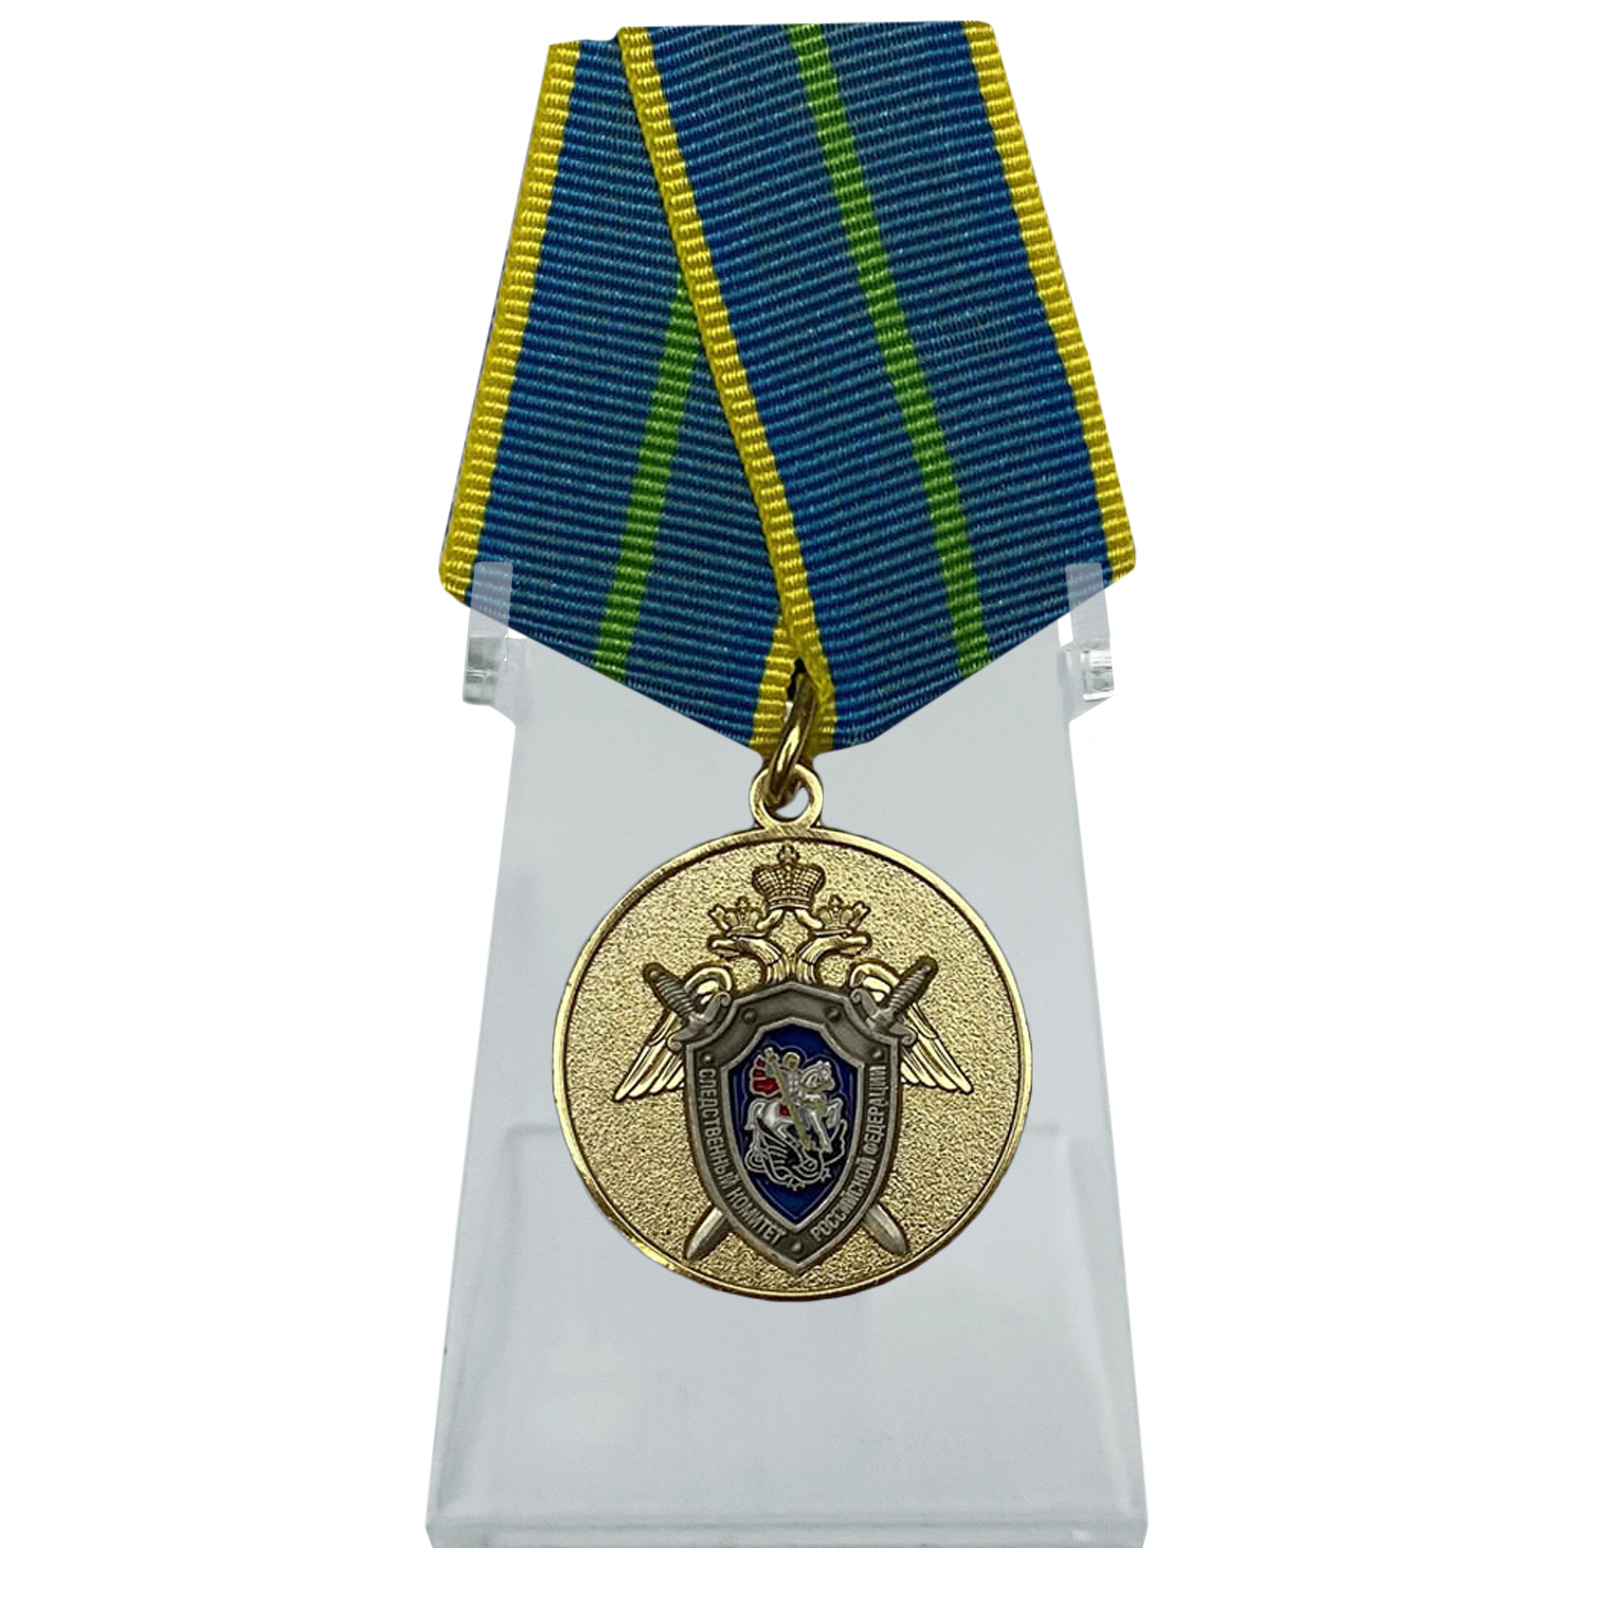 Медаль "За безупречную службу в СК РФ" 1 степени на подставке